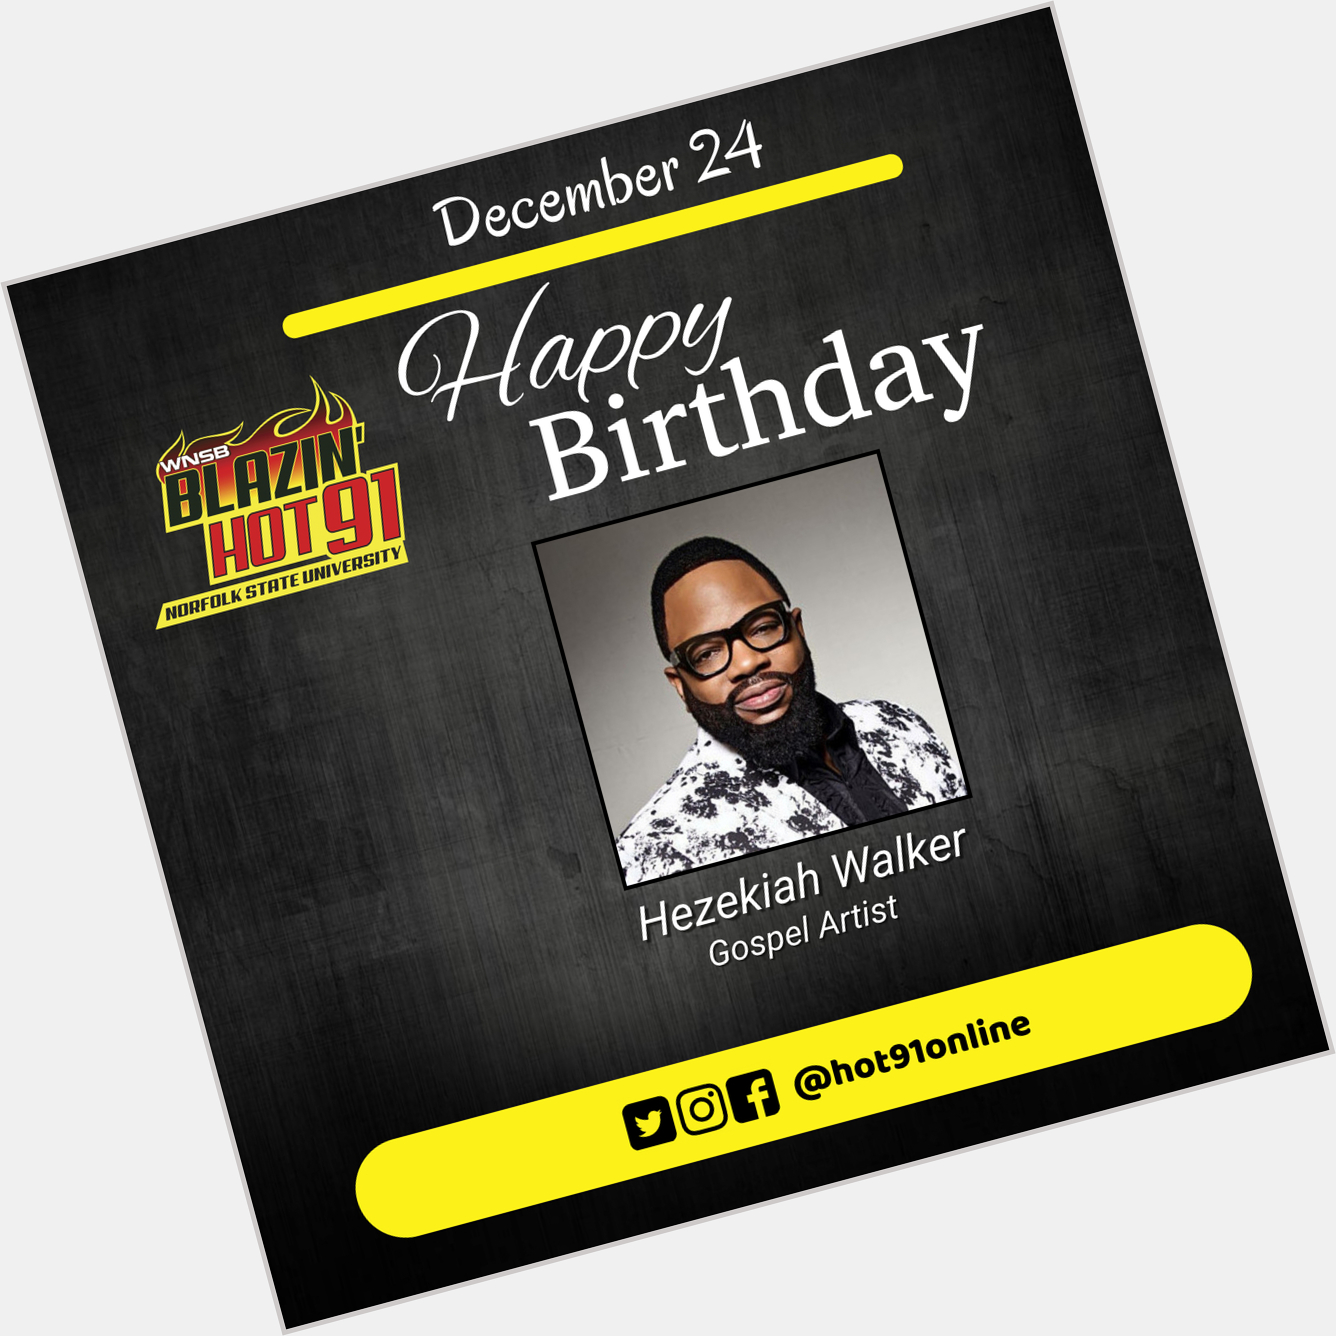 Happy Blazin\ Hot birthday to Pastor Hezekiah Walker   